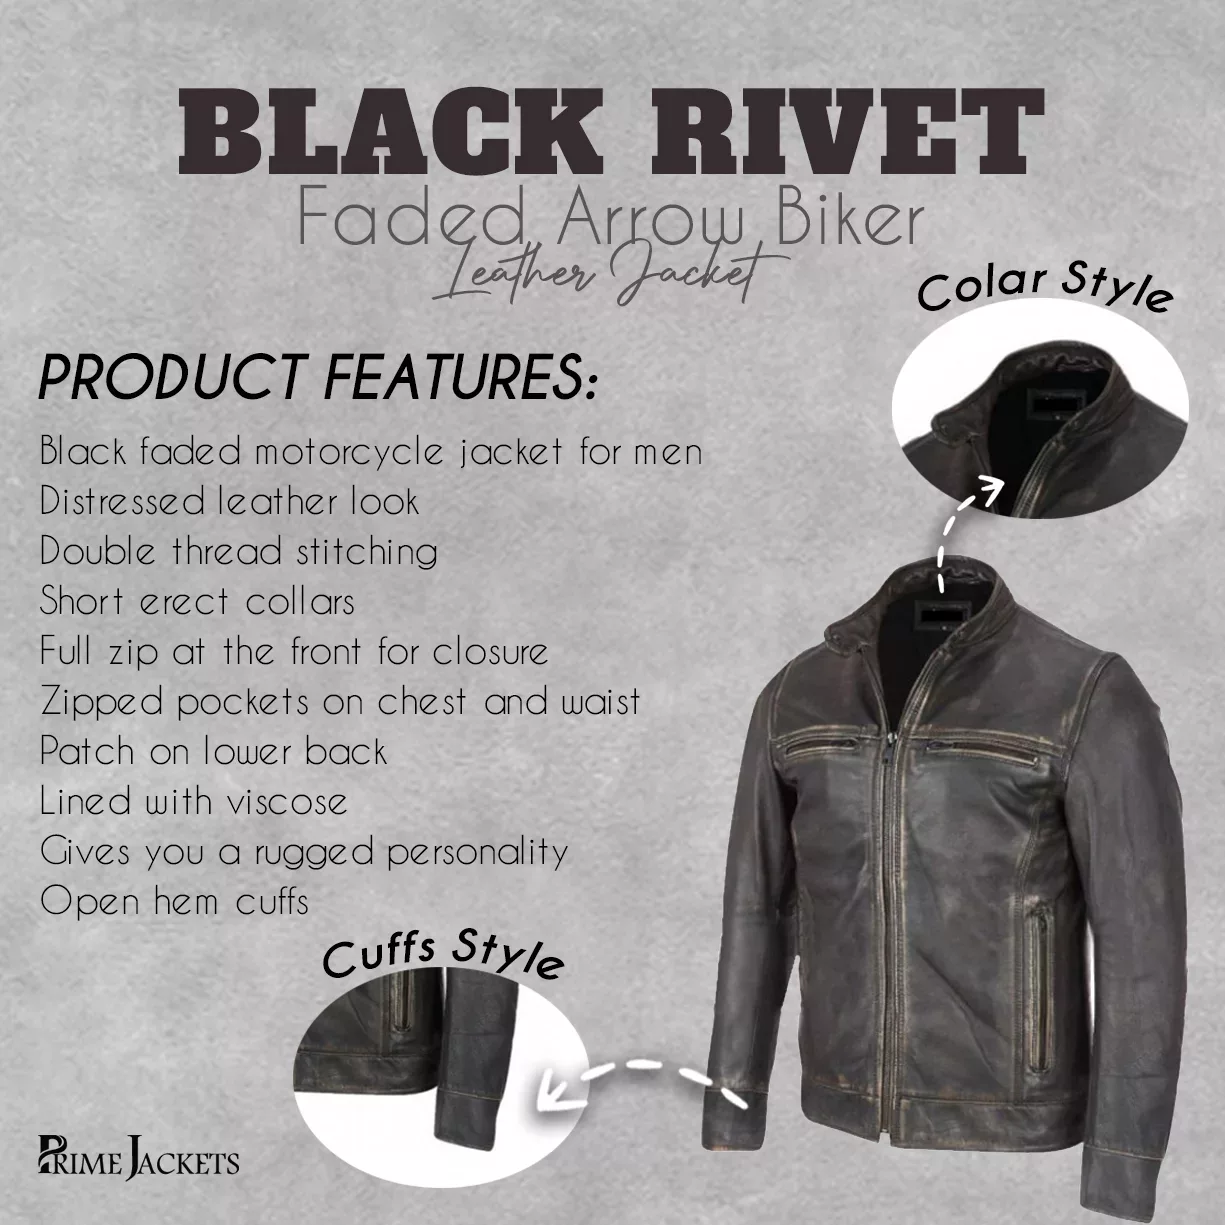 Black Rivet Faded Arrow Biker Leather Jacket